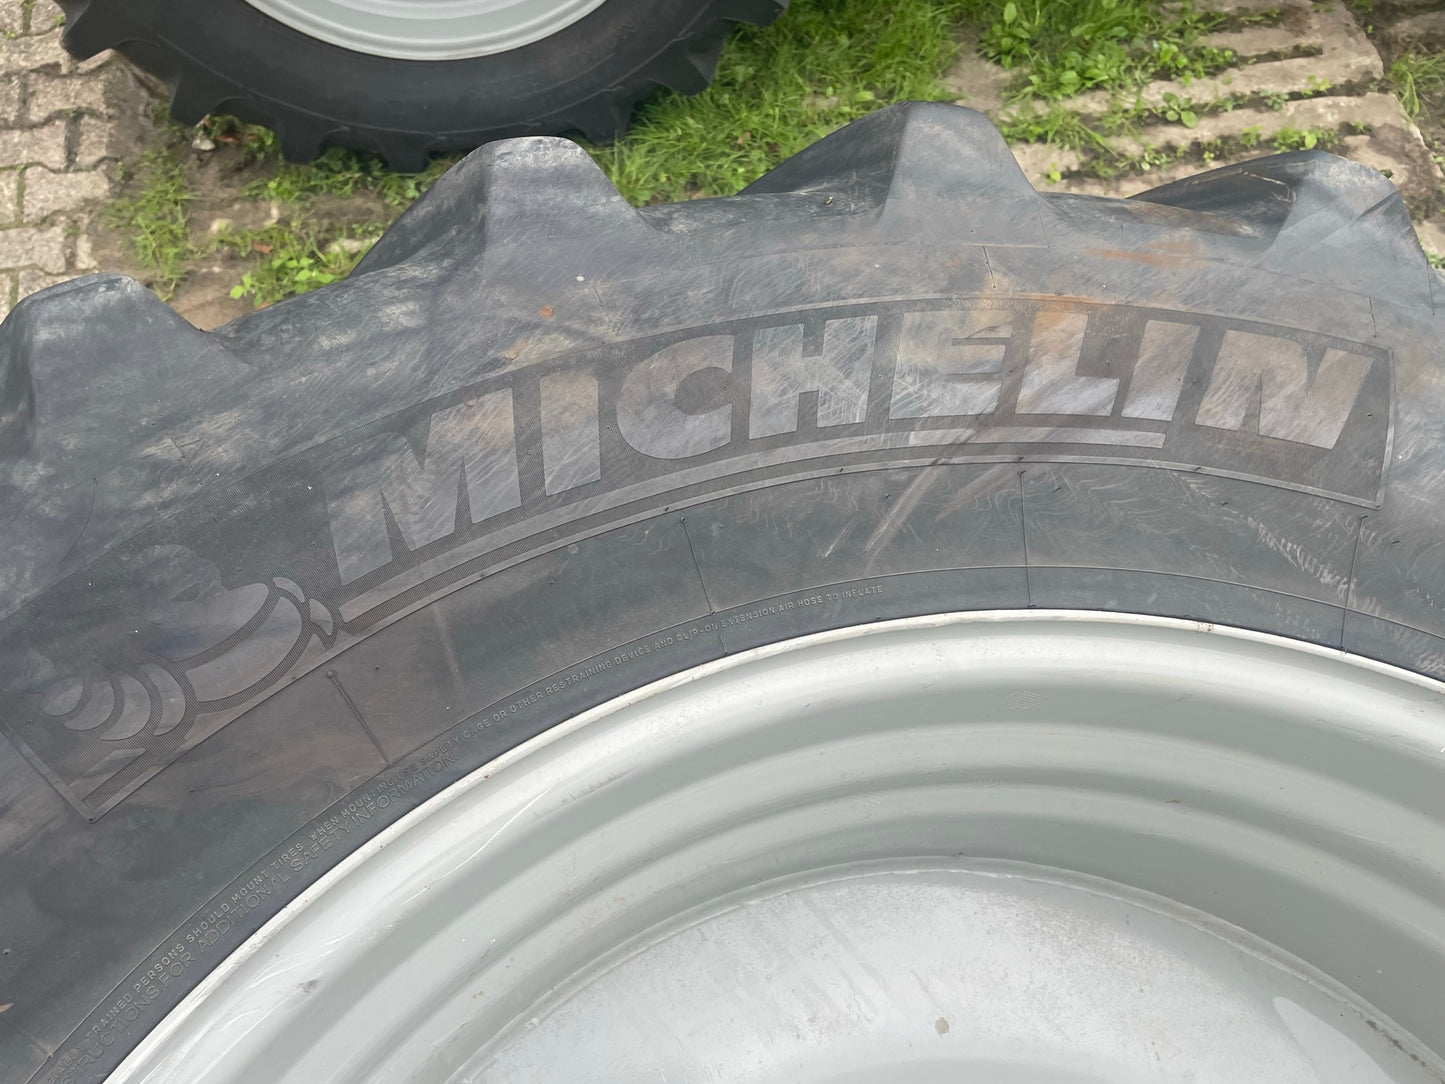 Michelin Omnibib 620/70 R42 Tractor tires on rim